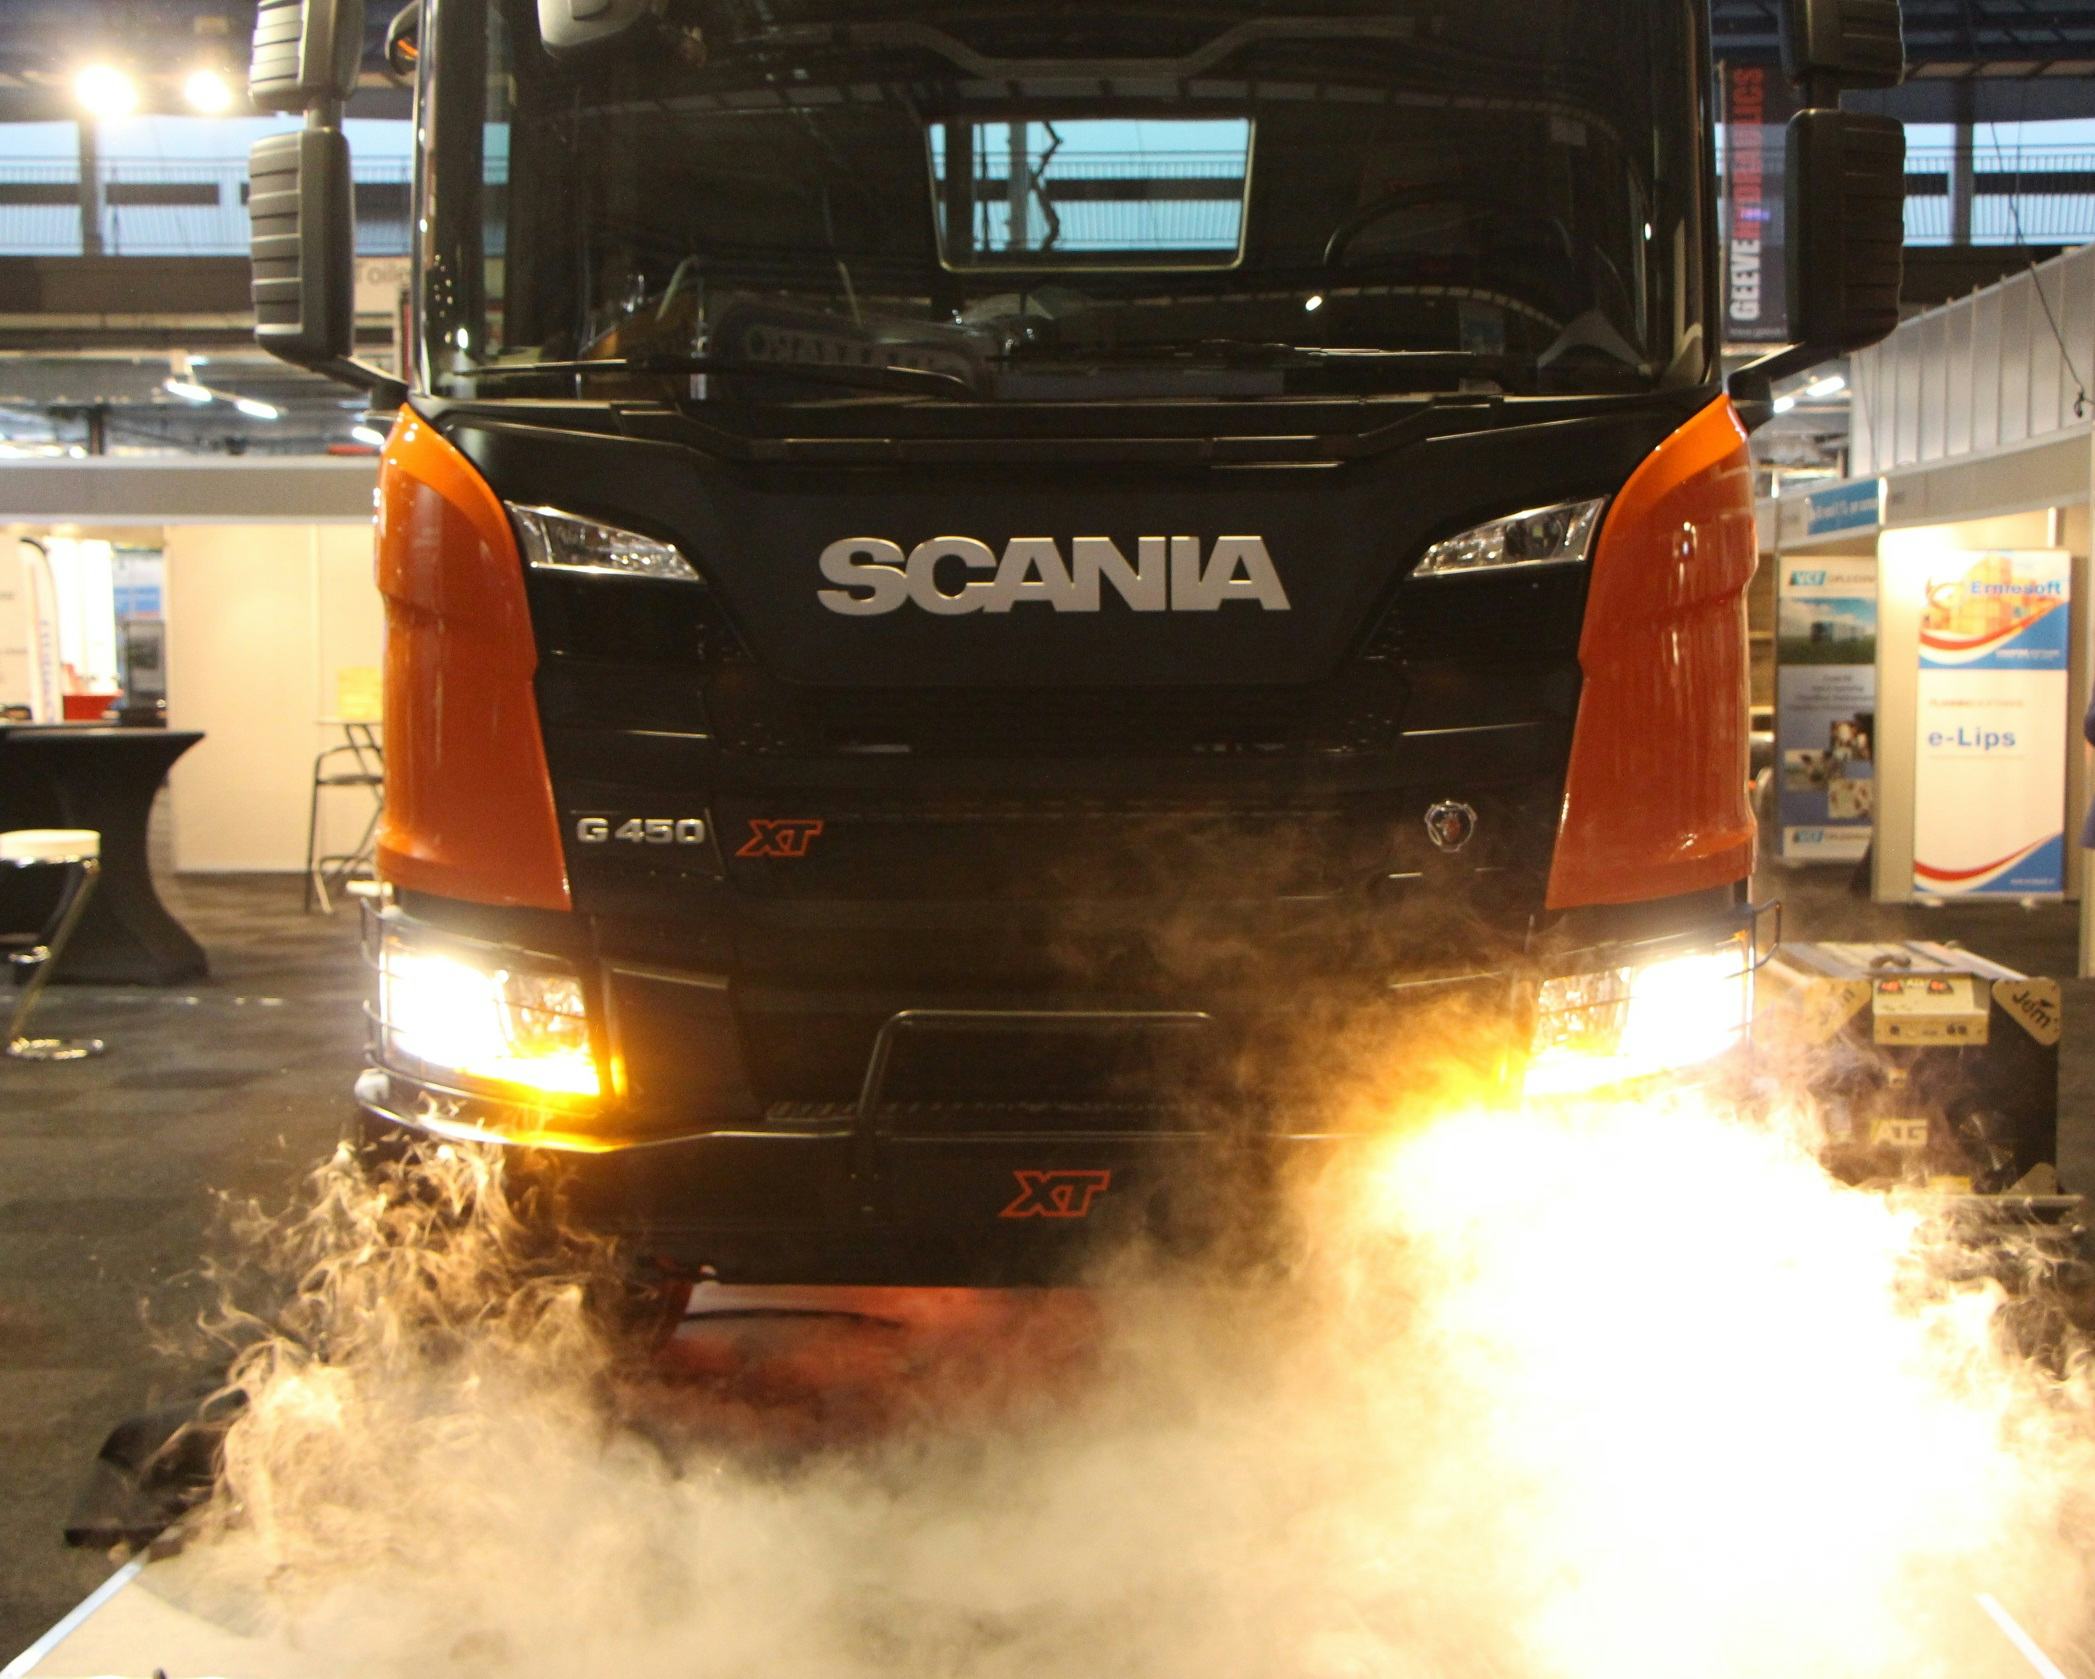 Op de beursvloer van Transport Compleet in Gorinchem onthulden managing director Janko van der Baan en sales director Jan de Vries van Scania met een druk op de knop de nieuwe Scania XT.